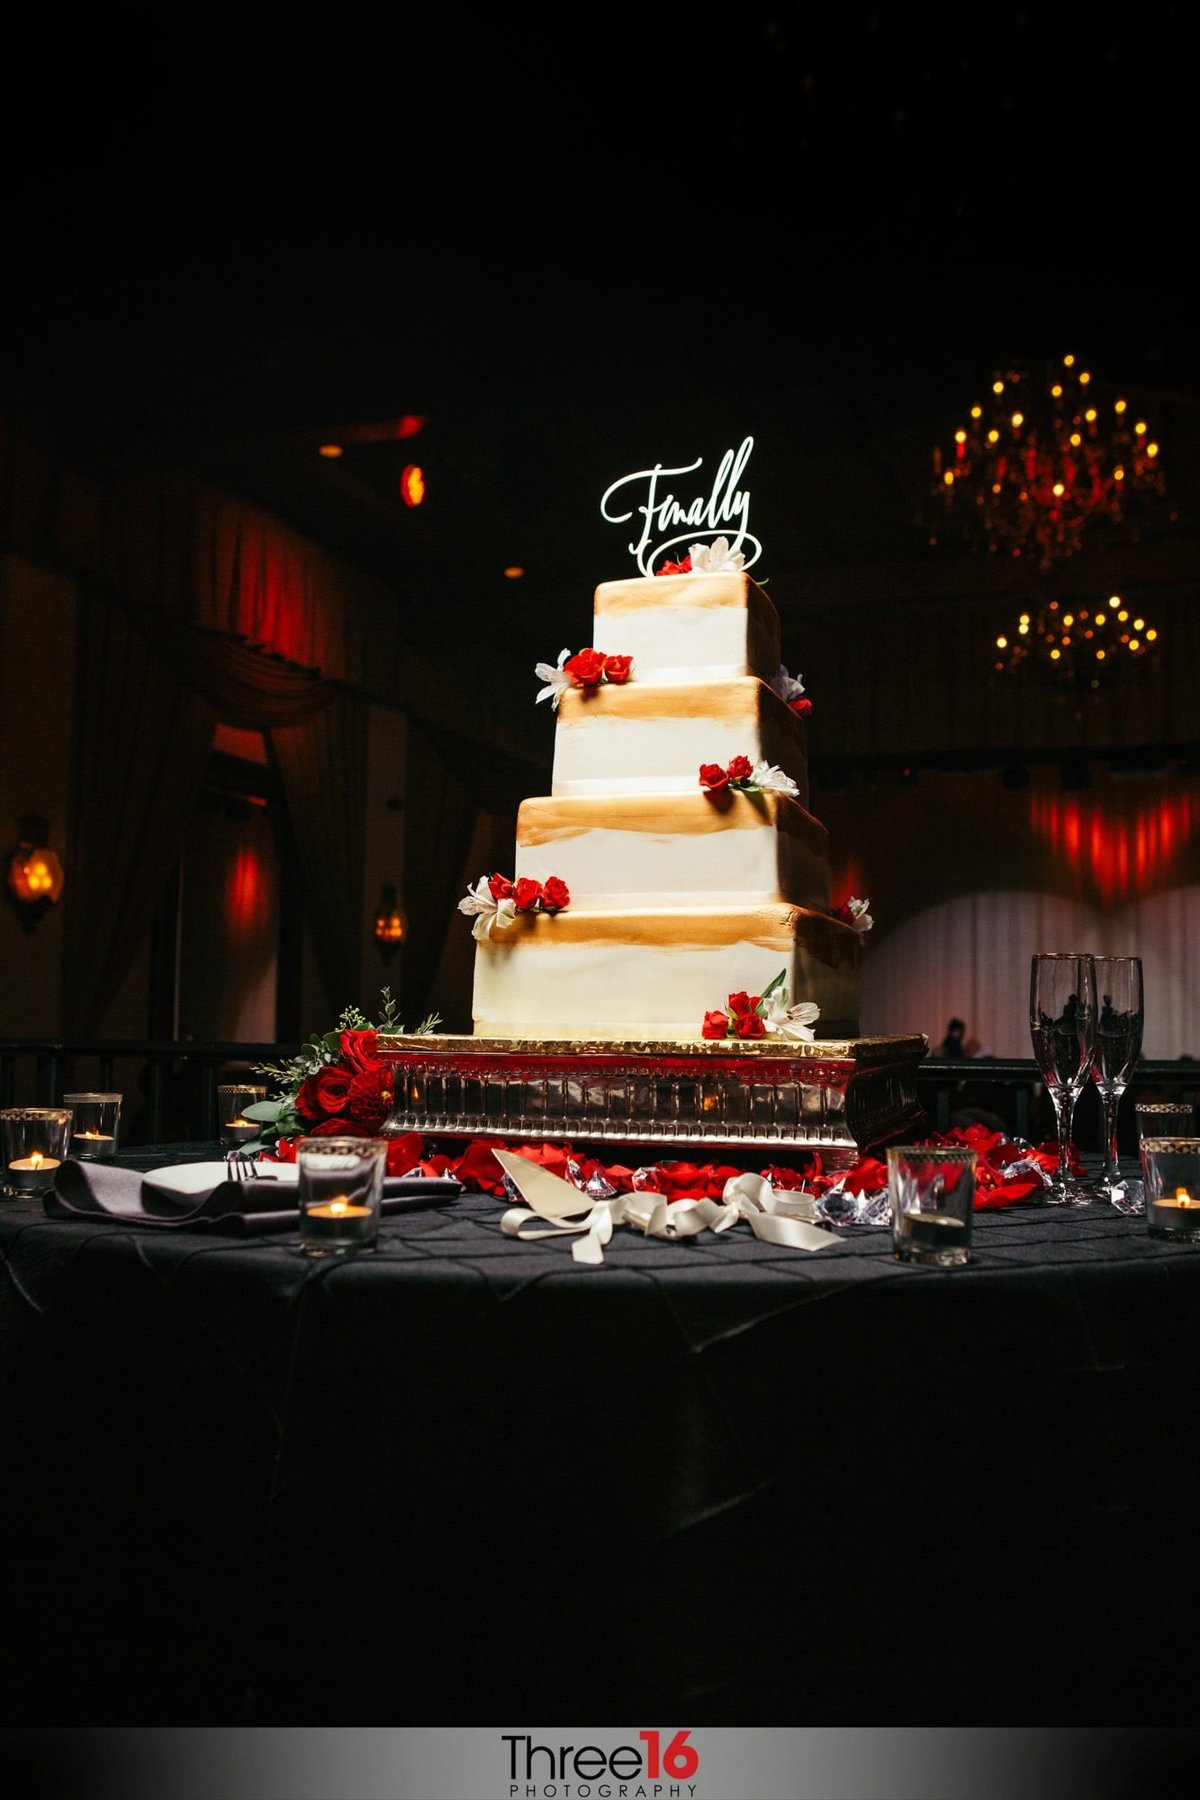 Beautiful wedding cake - Finally!